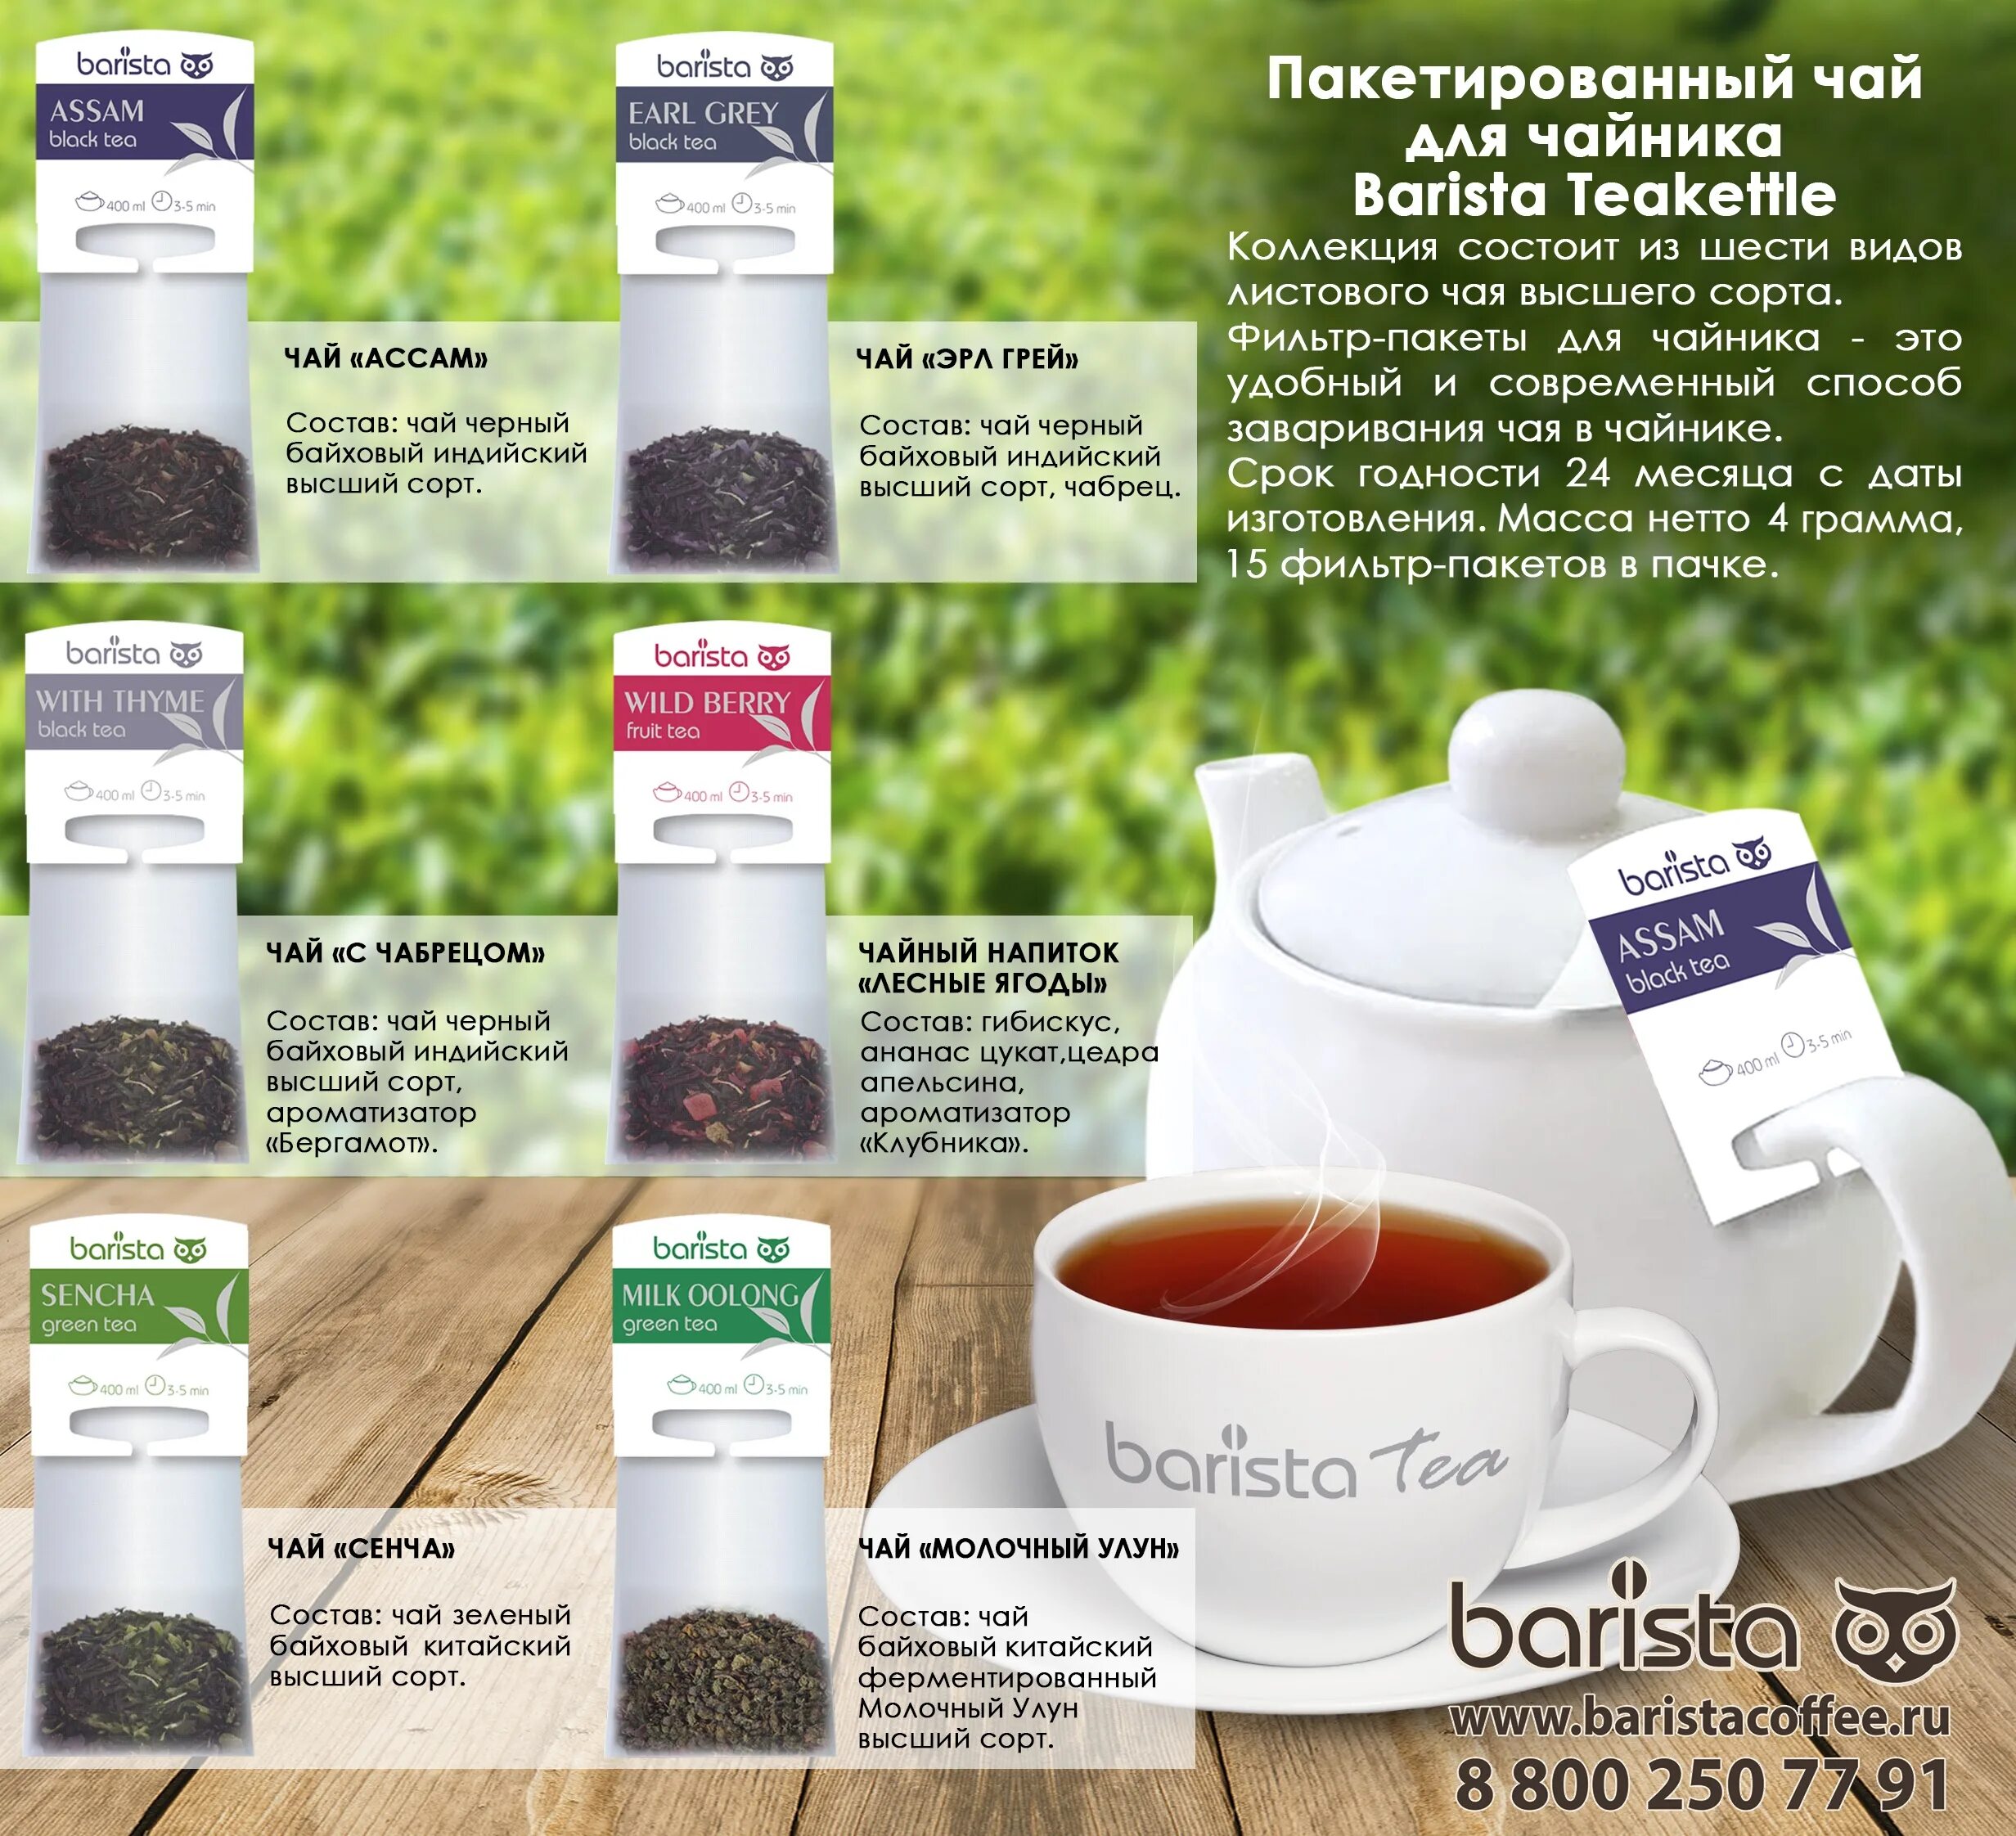 Чай Barista Tea. Чай пакетированный Barista. Чай бариста фруктовый. Barista чай в пакетиках. Купить чай ульяновск